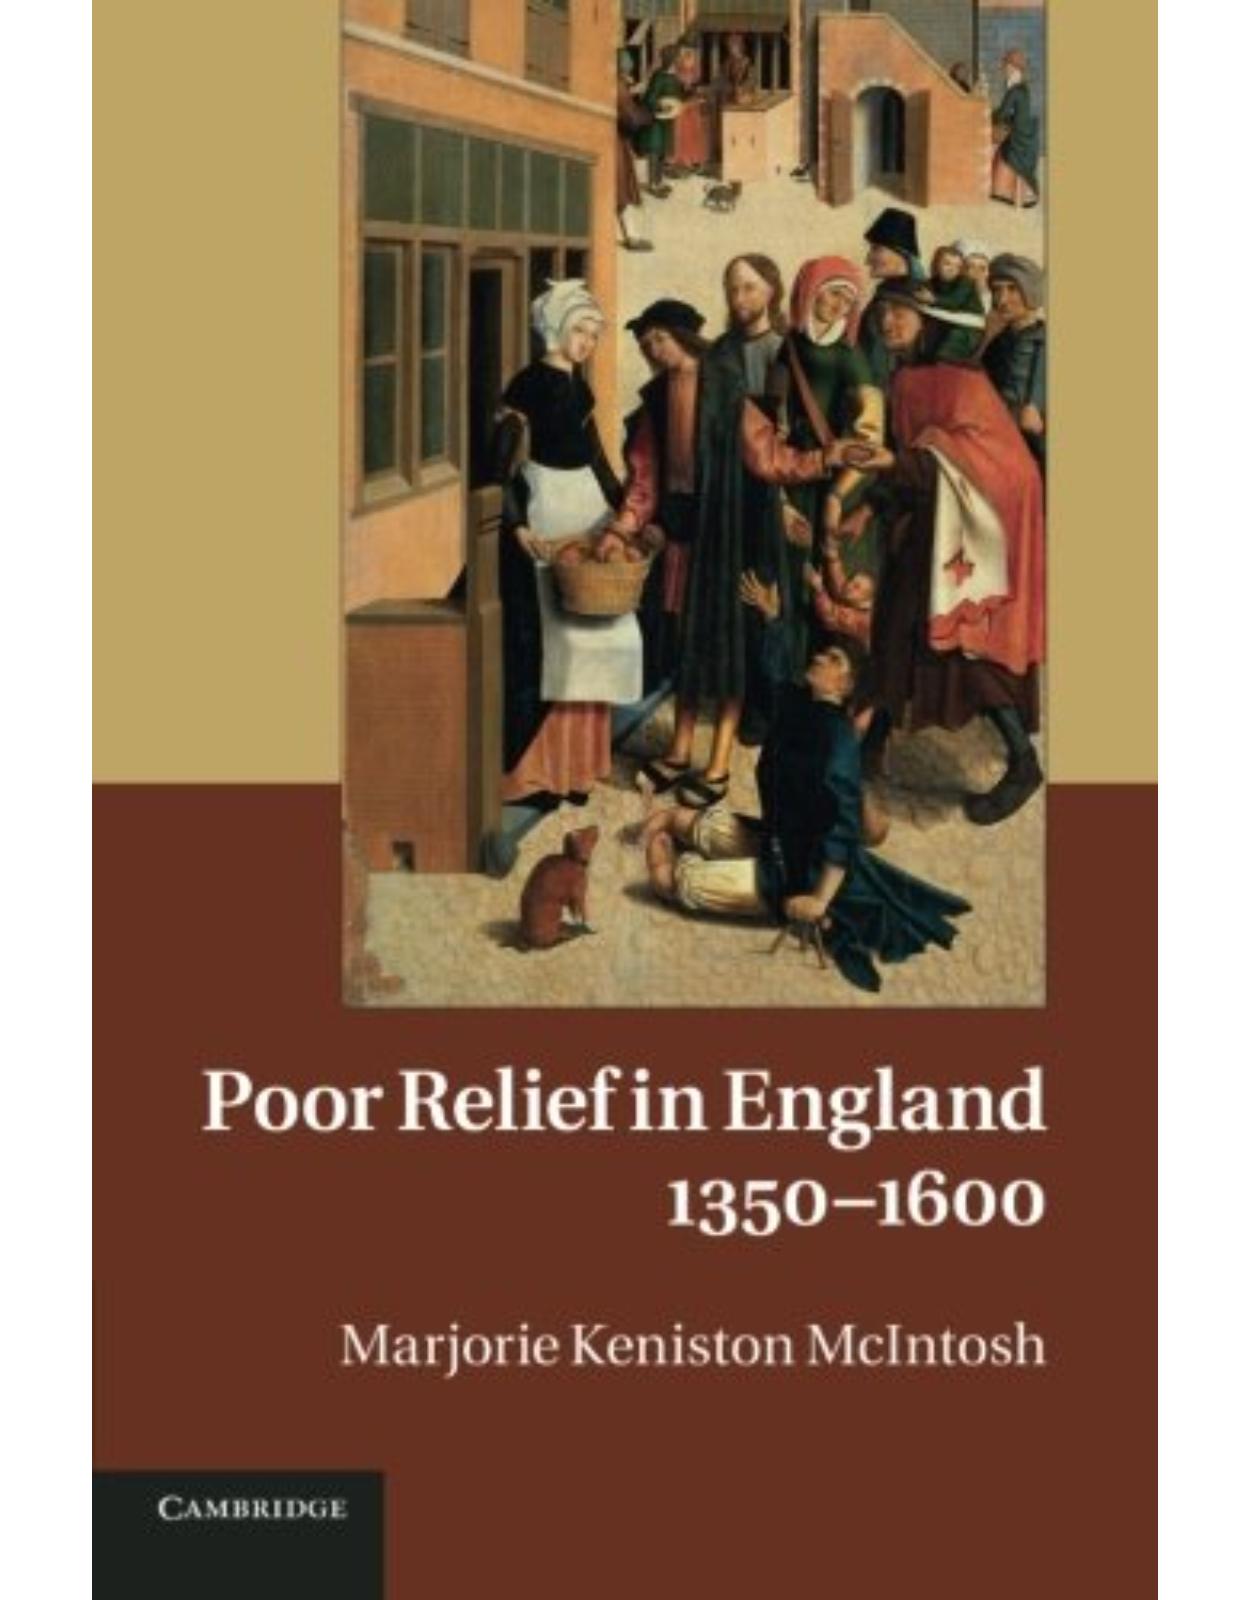 Poor Relief in England, 1350-1600 